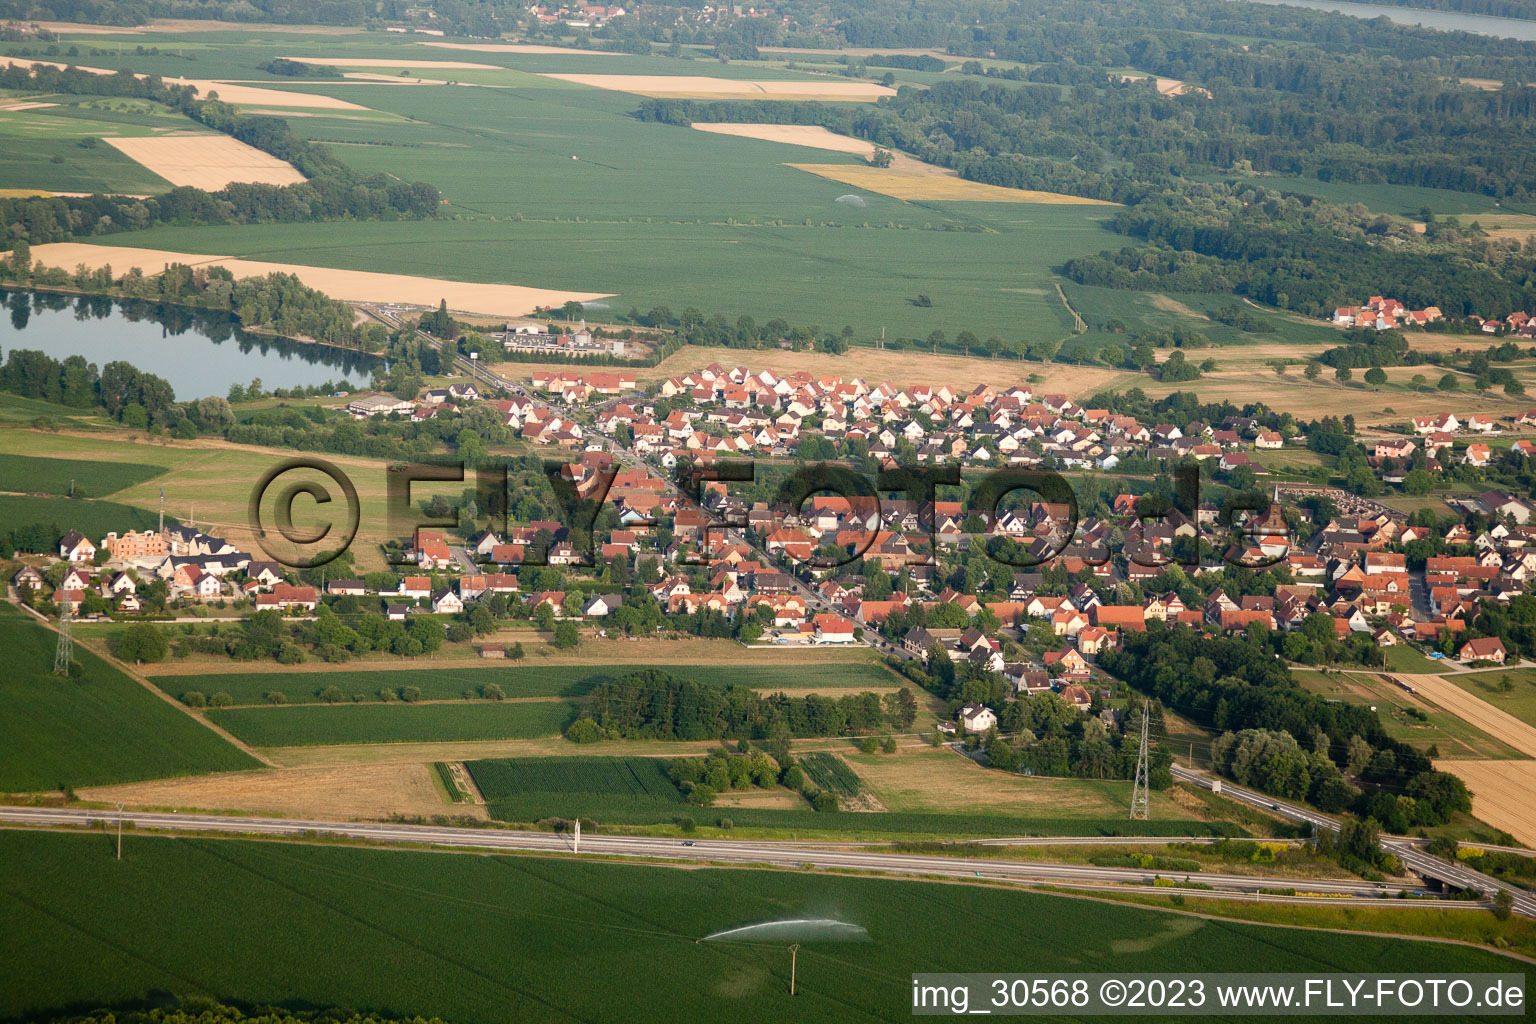 Vue aérienne de De l'ouest à Rountzenheim dans le département Bas Rhin, France